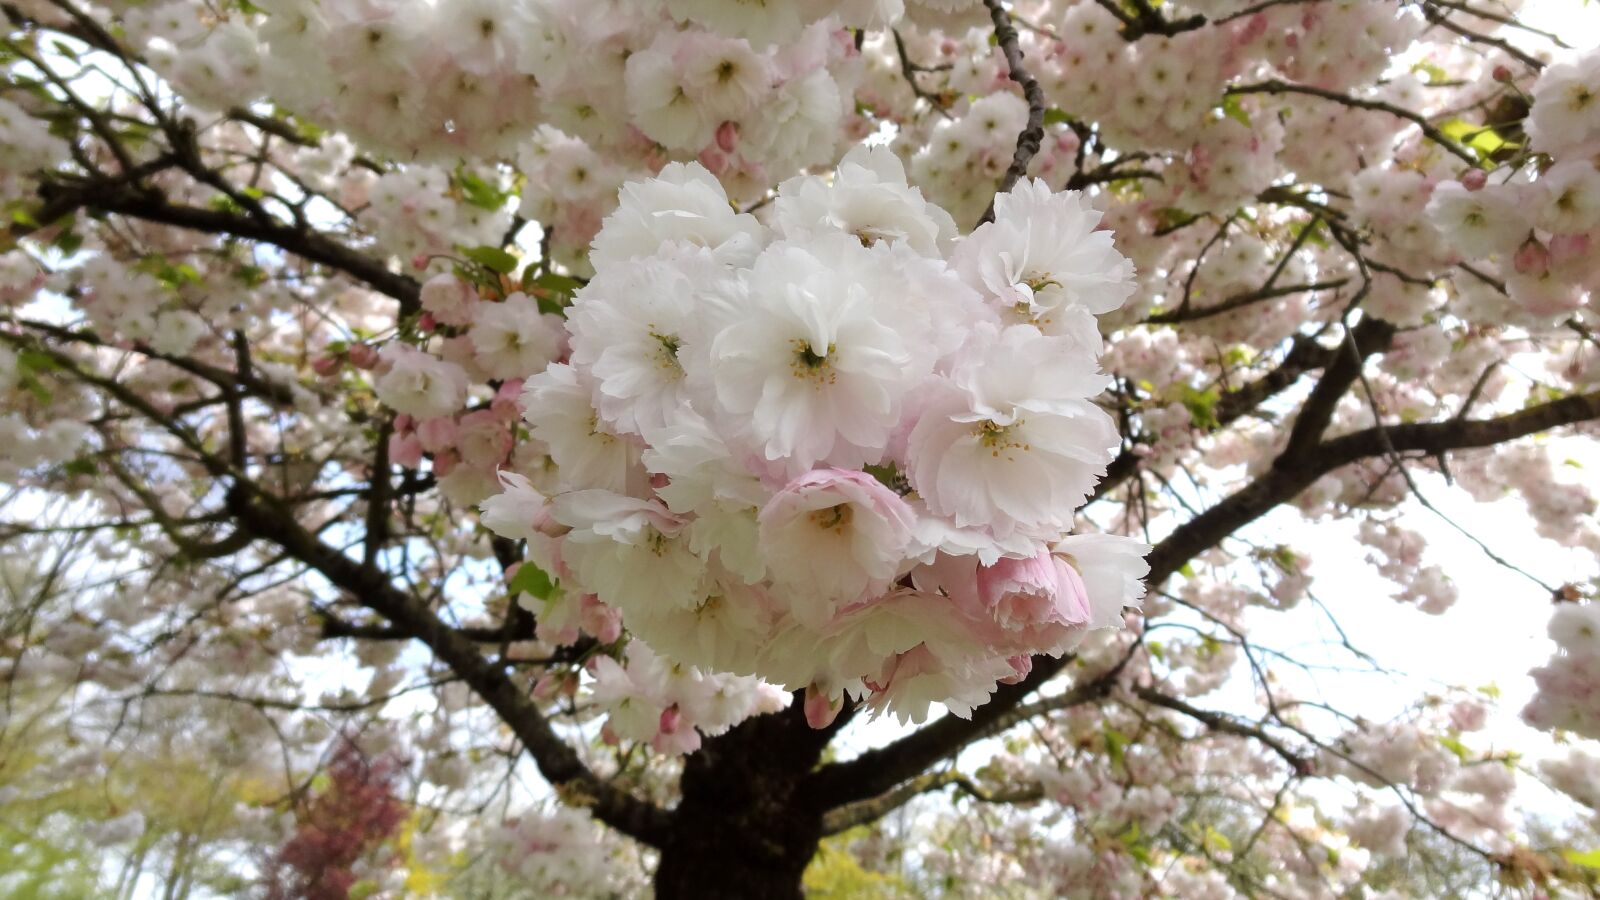 Sony Cyber-shot DSC-HX9V sample photo. Sakura, flower, spring photography